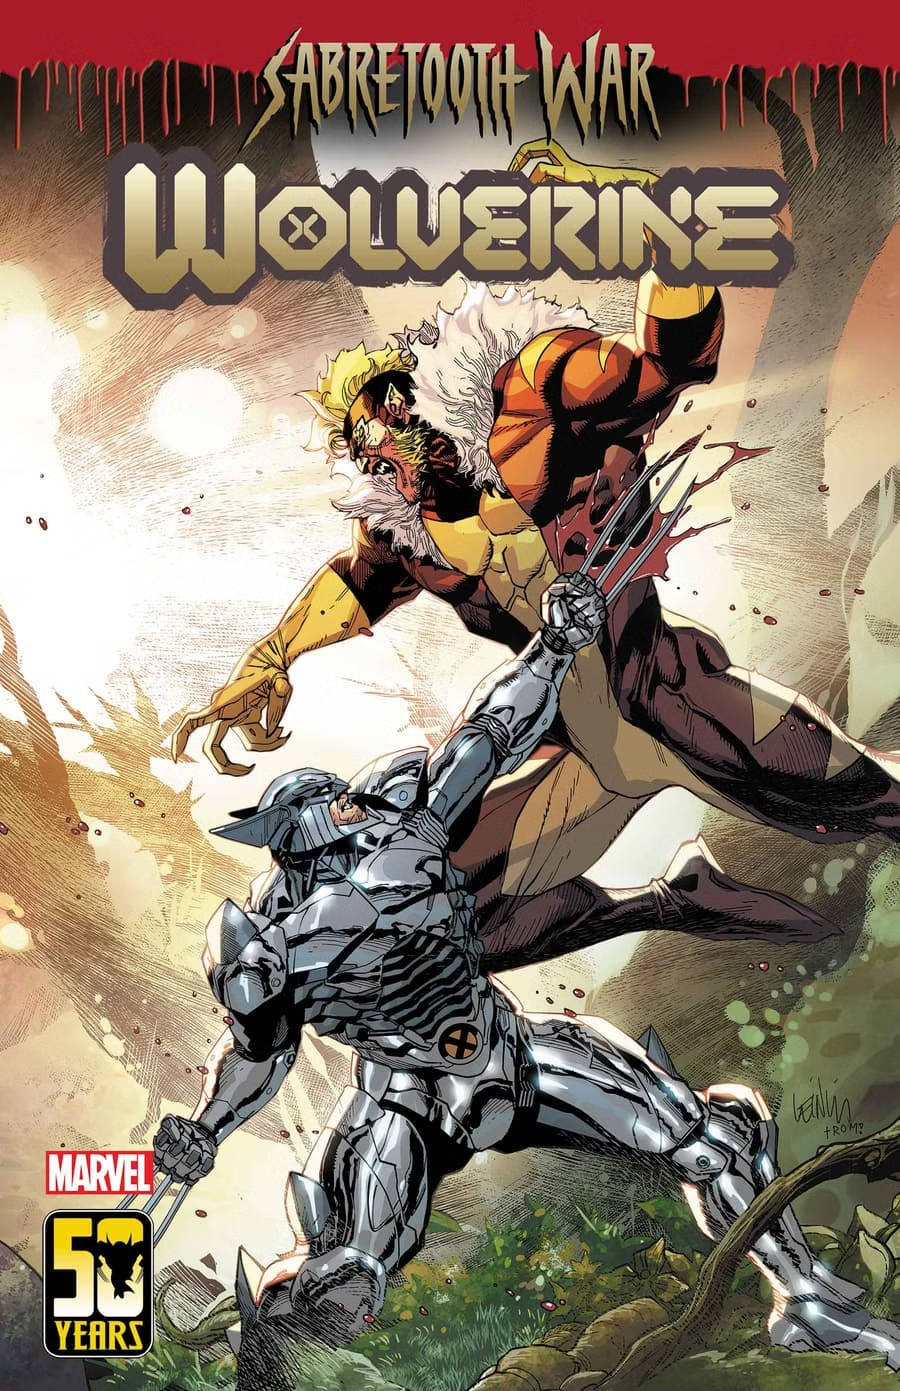 Wolverine com armadura de adamantium - WOLVERINE #50 - BLOG FAROFEIROS